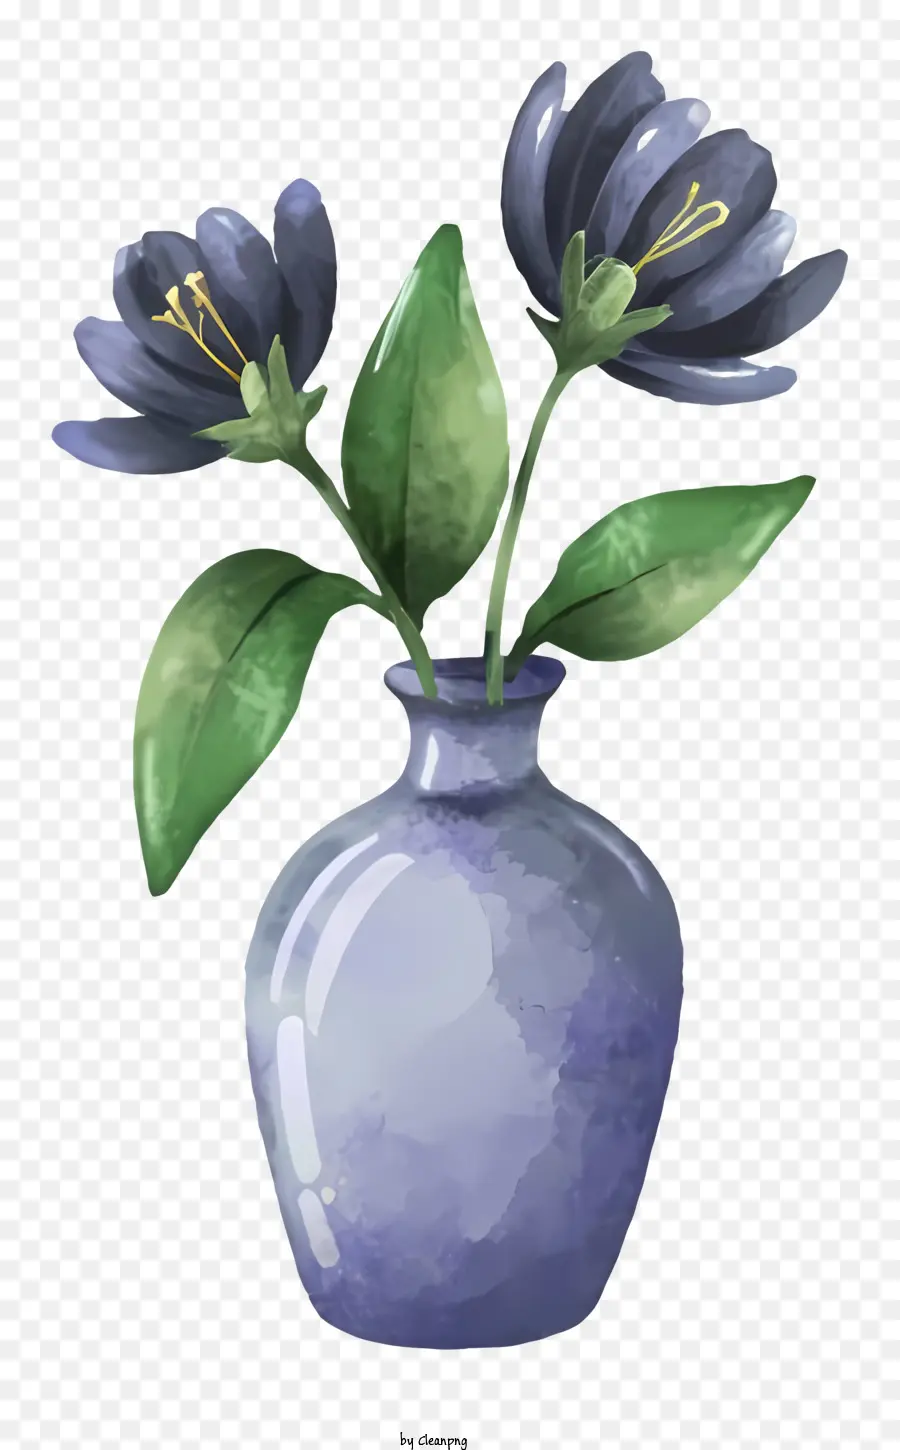 hoa sắp xếp - Bình màu xanh với hai bông hoa màu xanh nhạt